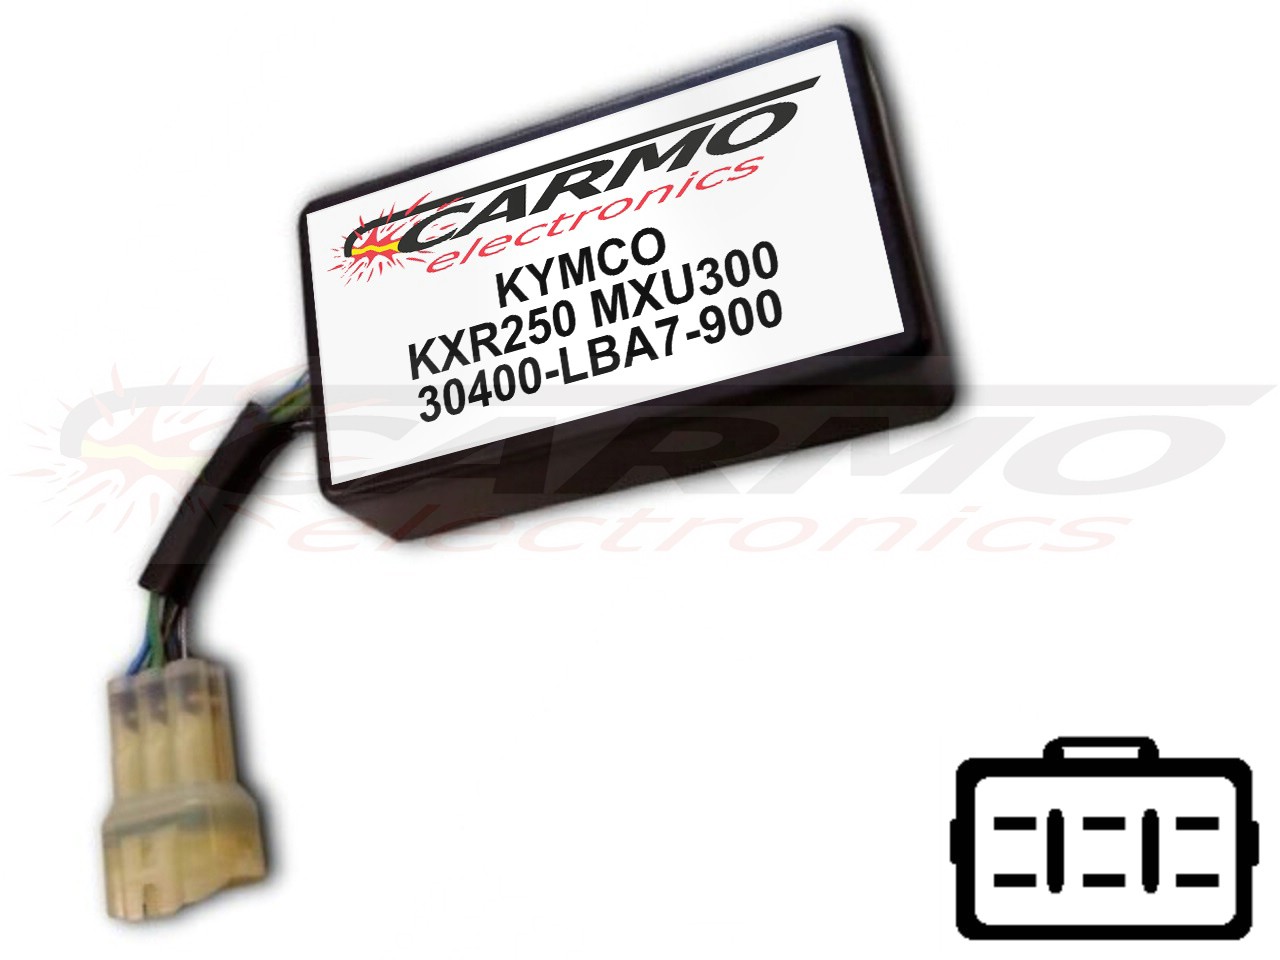 Kymco KXR250 MXU250 TCI CDI dispositif de commande boîte noire (30400-LBA7-900, CT-LBA7-00) - Cliquez sur l'image pour la fermer